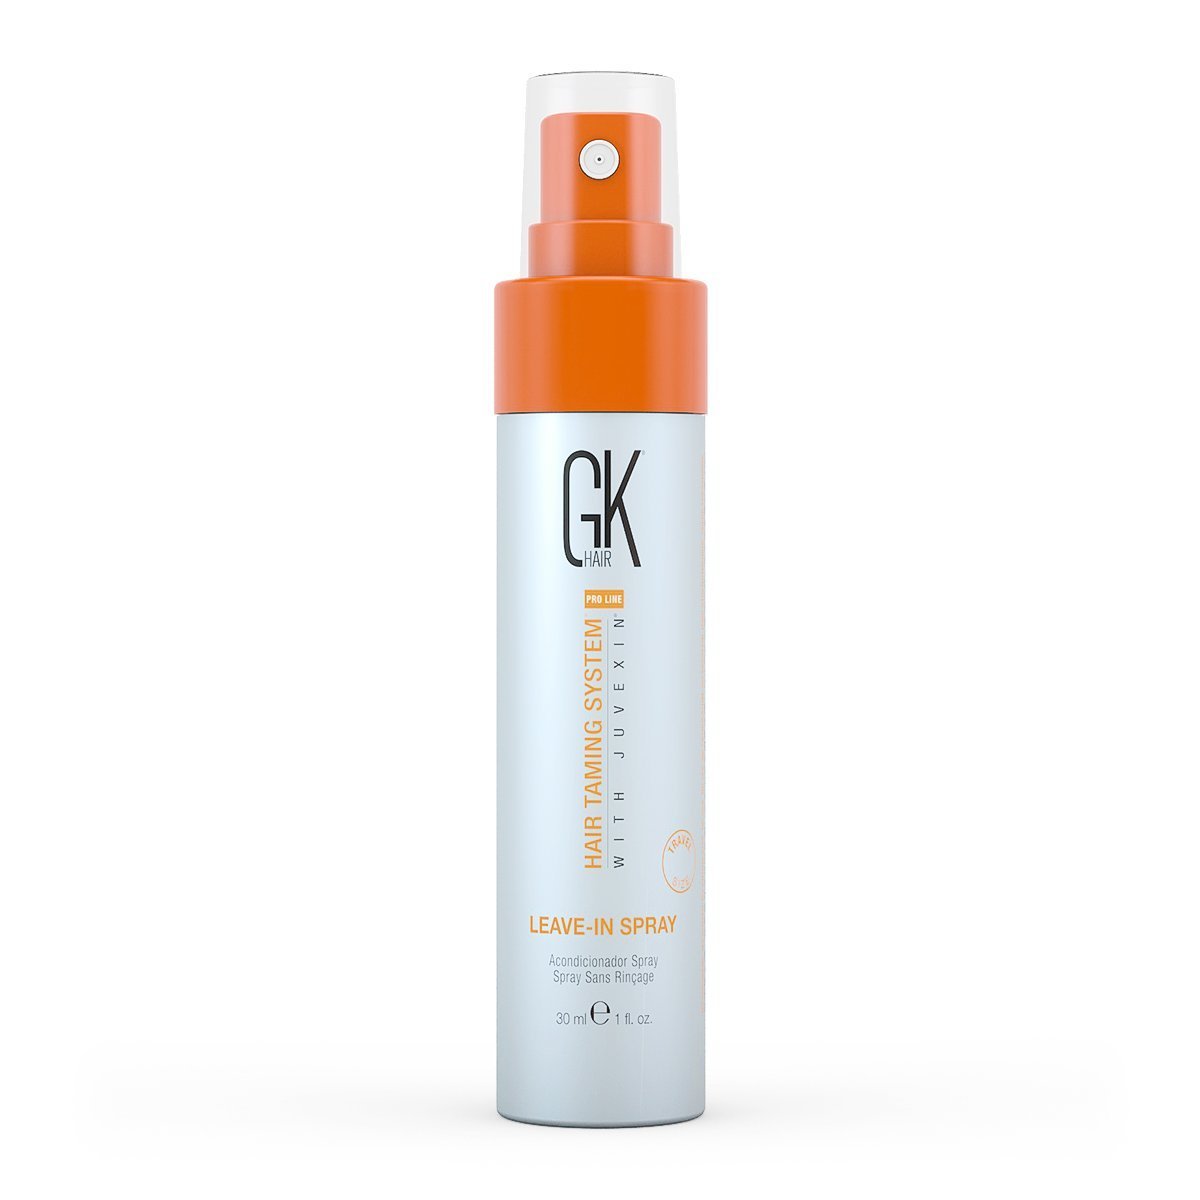 Leave in Hair Spray | Best Hair Styling Product GK Hair UAE